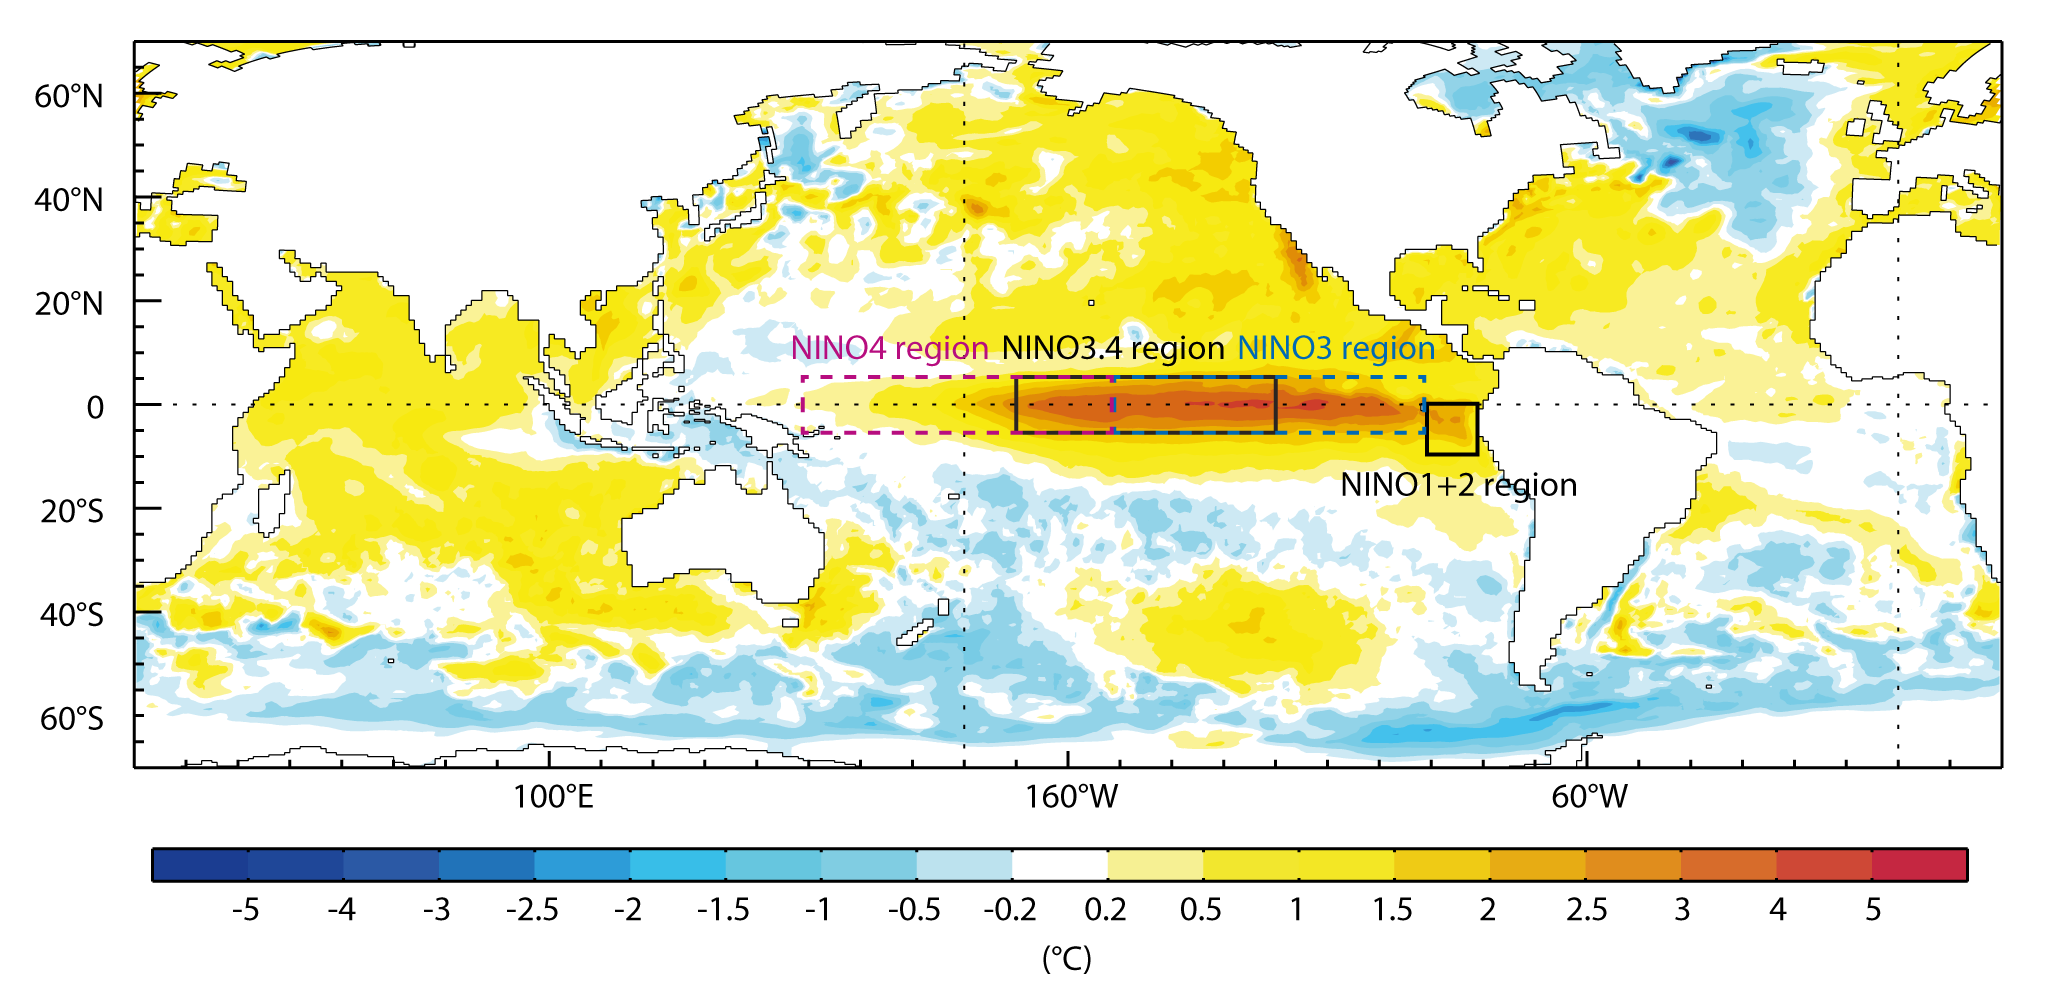 Нино перевод. Цикл Эль Ниньо по годам. Эль-Ниньо график за всю историю. Nino 3.4 and Nino 4 график. Цикл Эльниньо какая фаза сейчас.